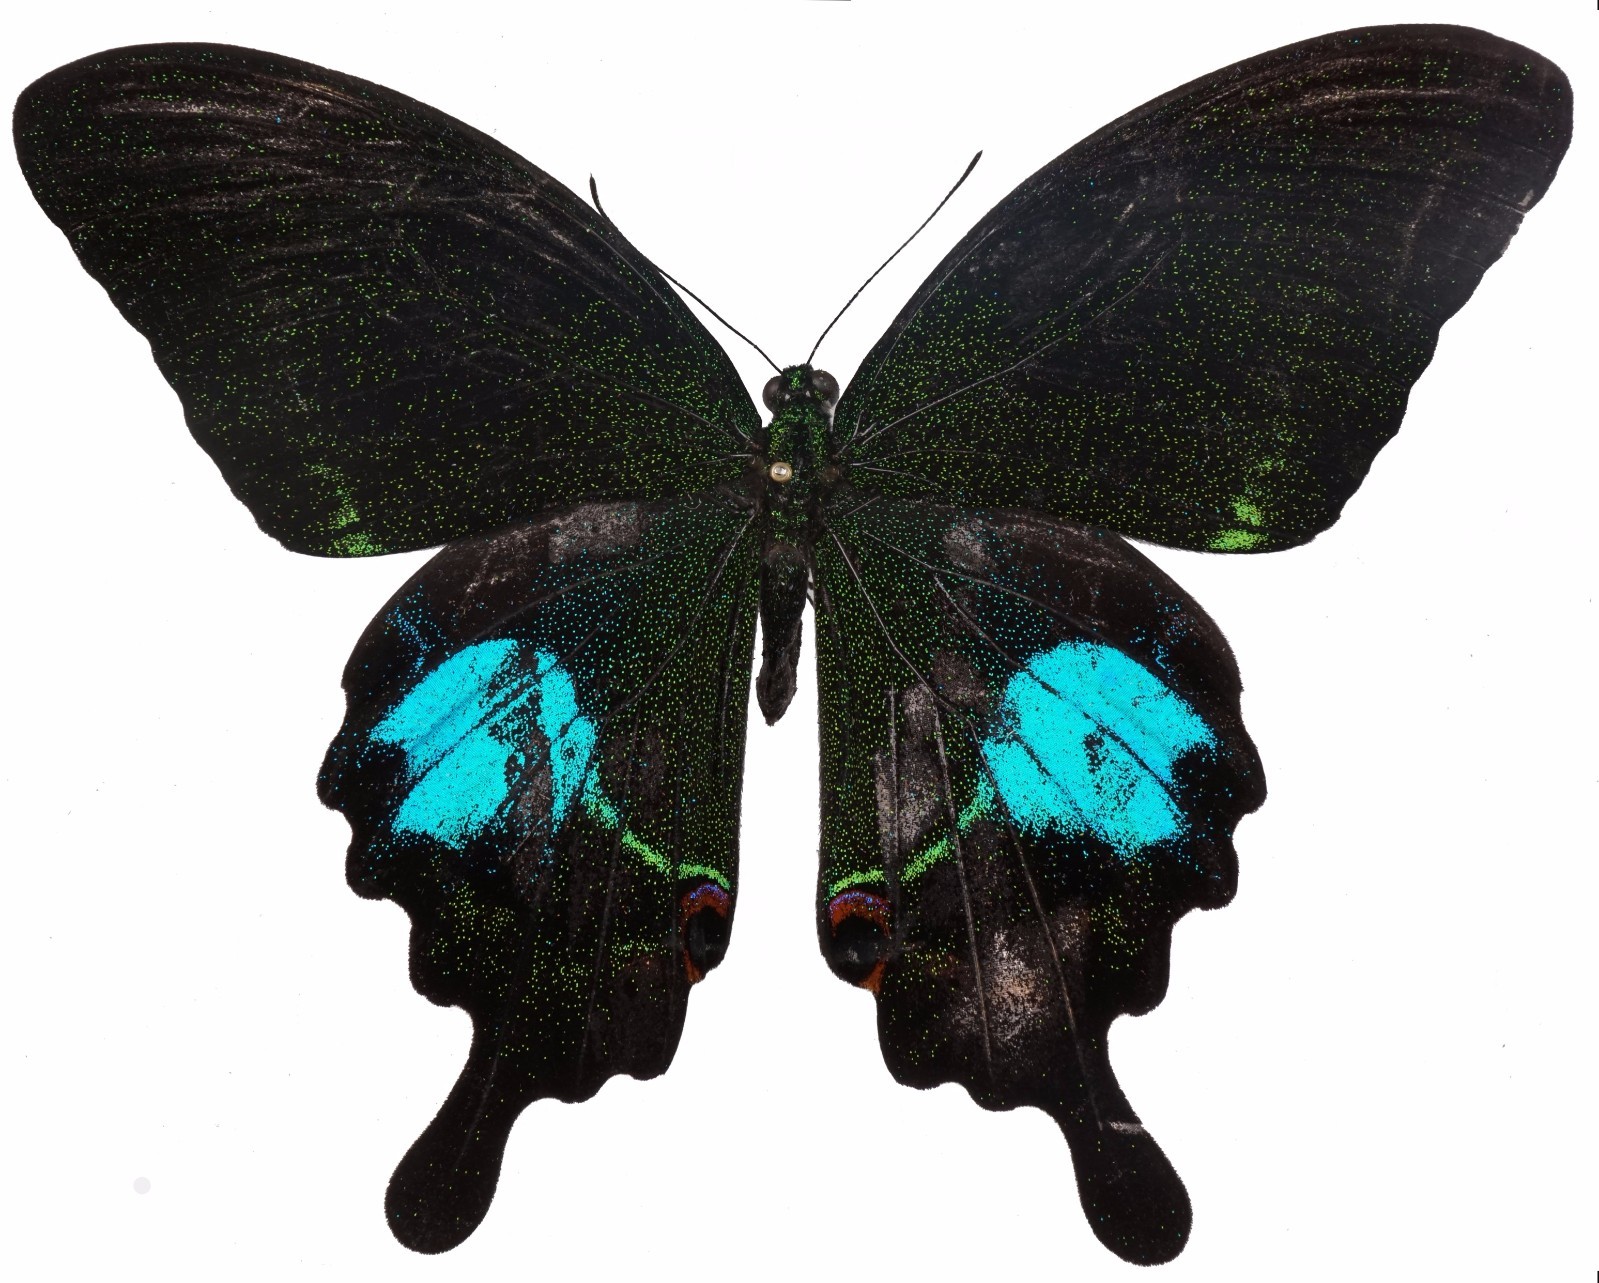 巴黎翠凤蝶/反翅黑褐色,散生金绿色鳞片,后翅有一大块金蓝色斑